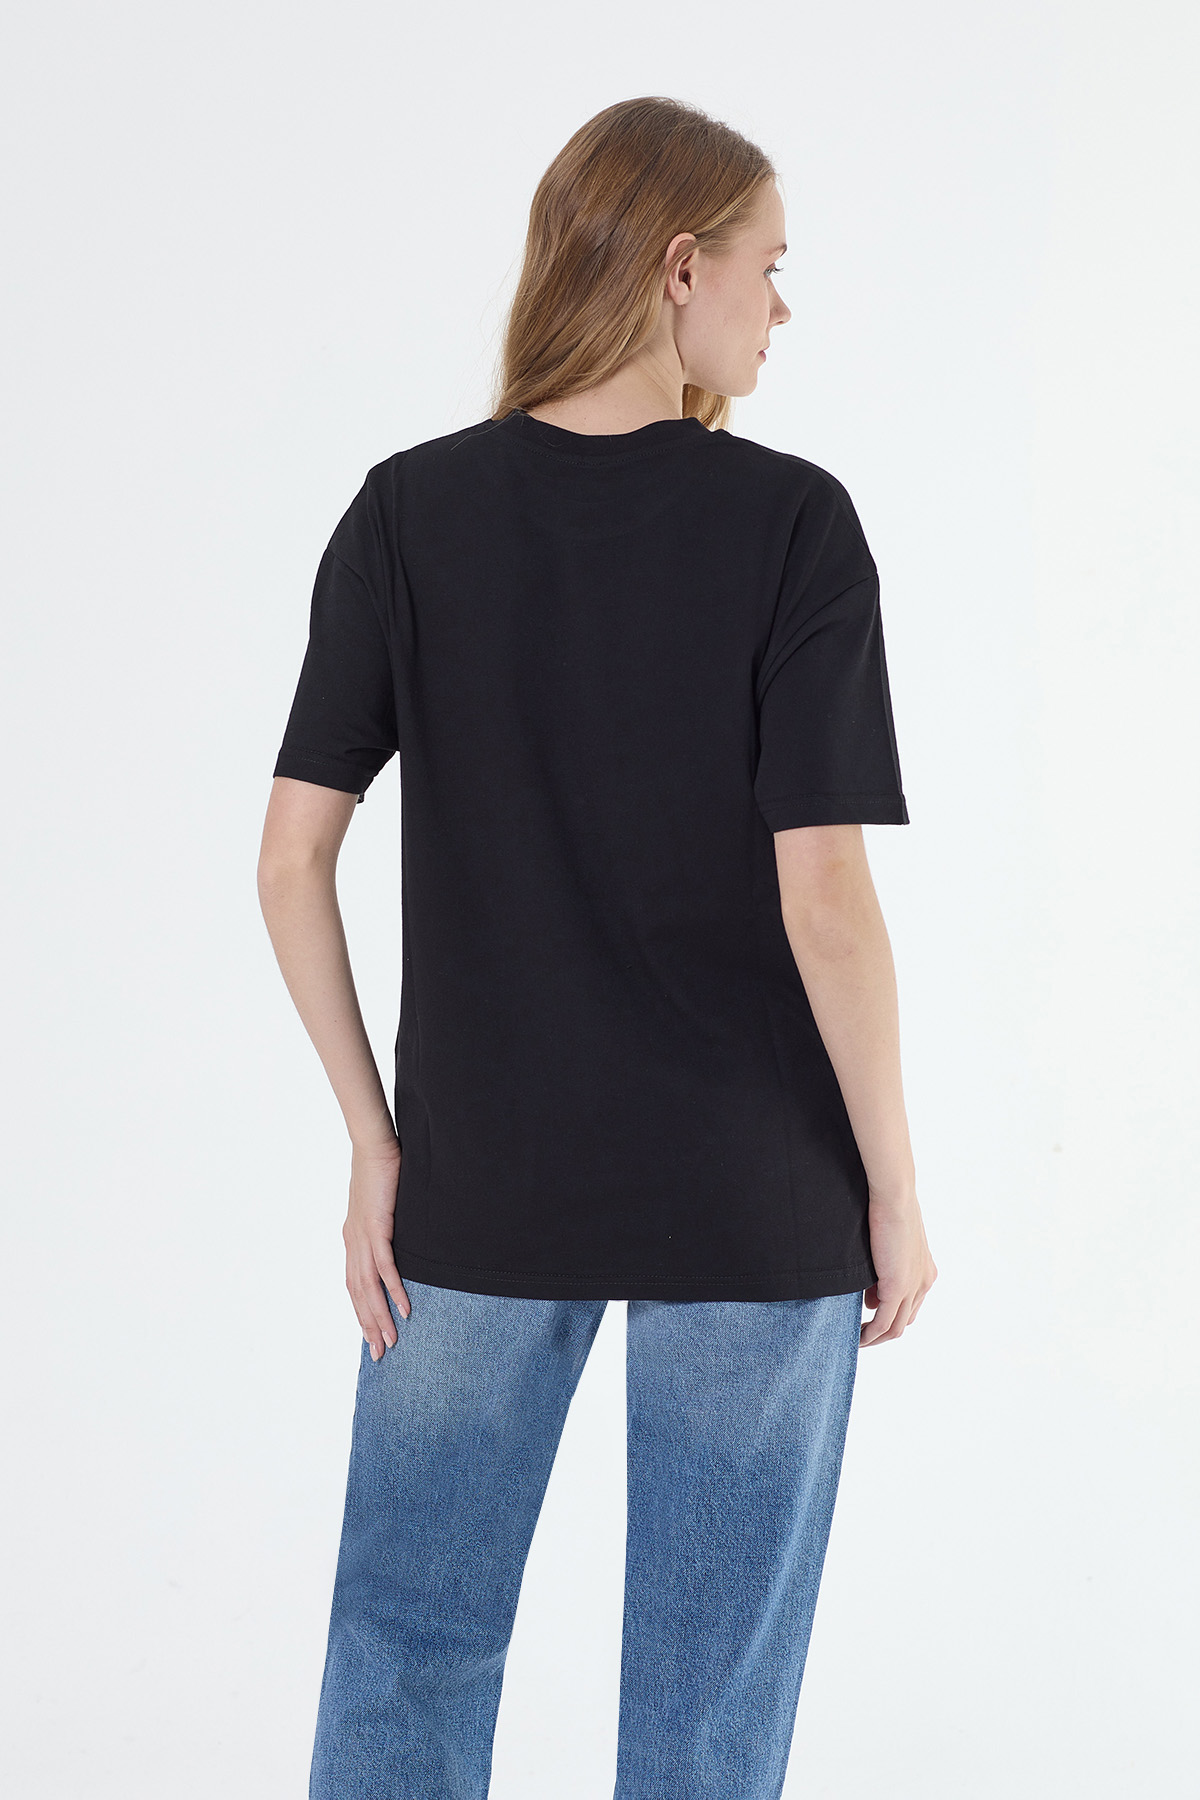 Denigma AR Kadın Handy Regular Fit Siyah Tshirt